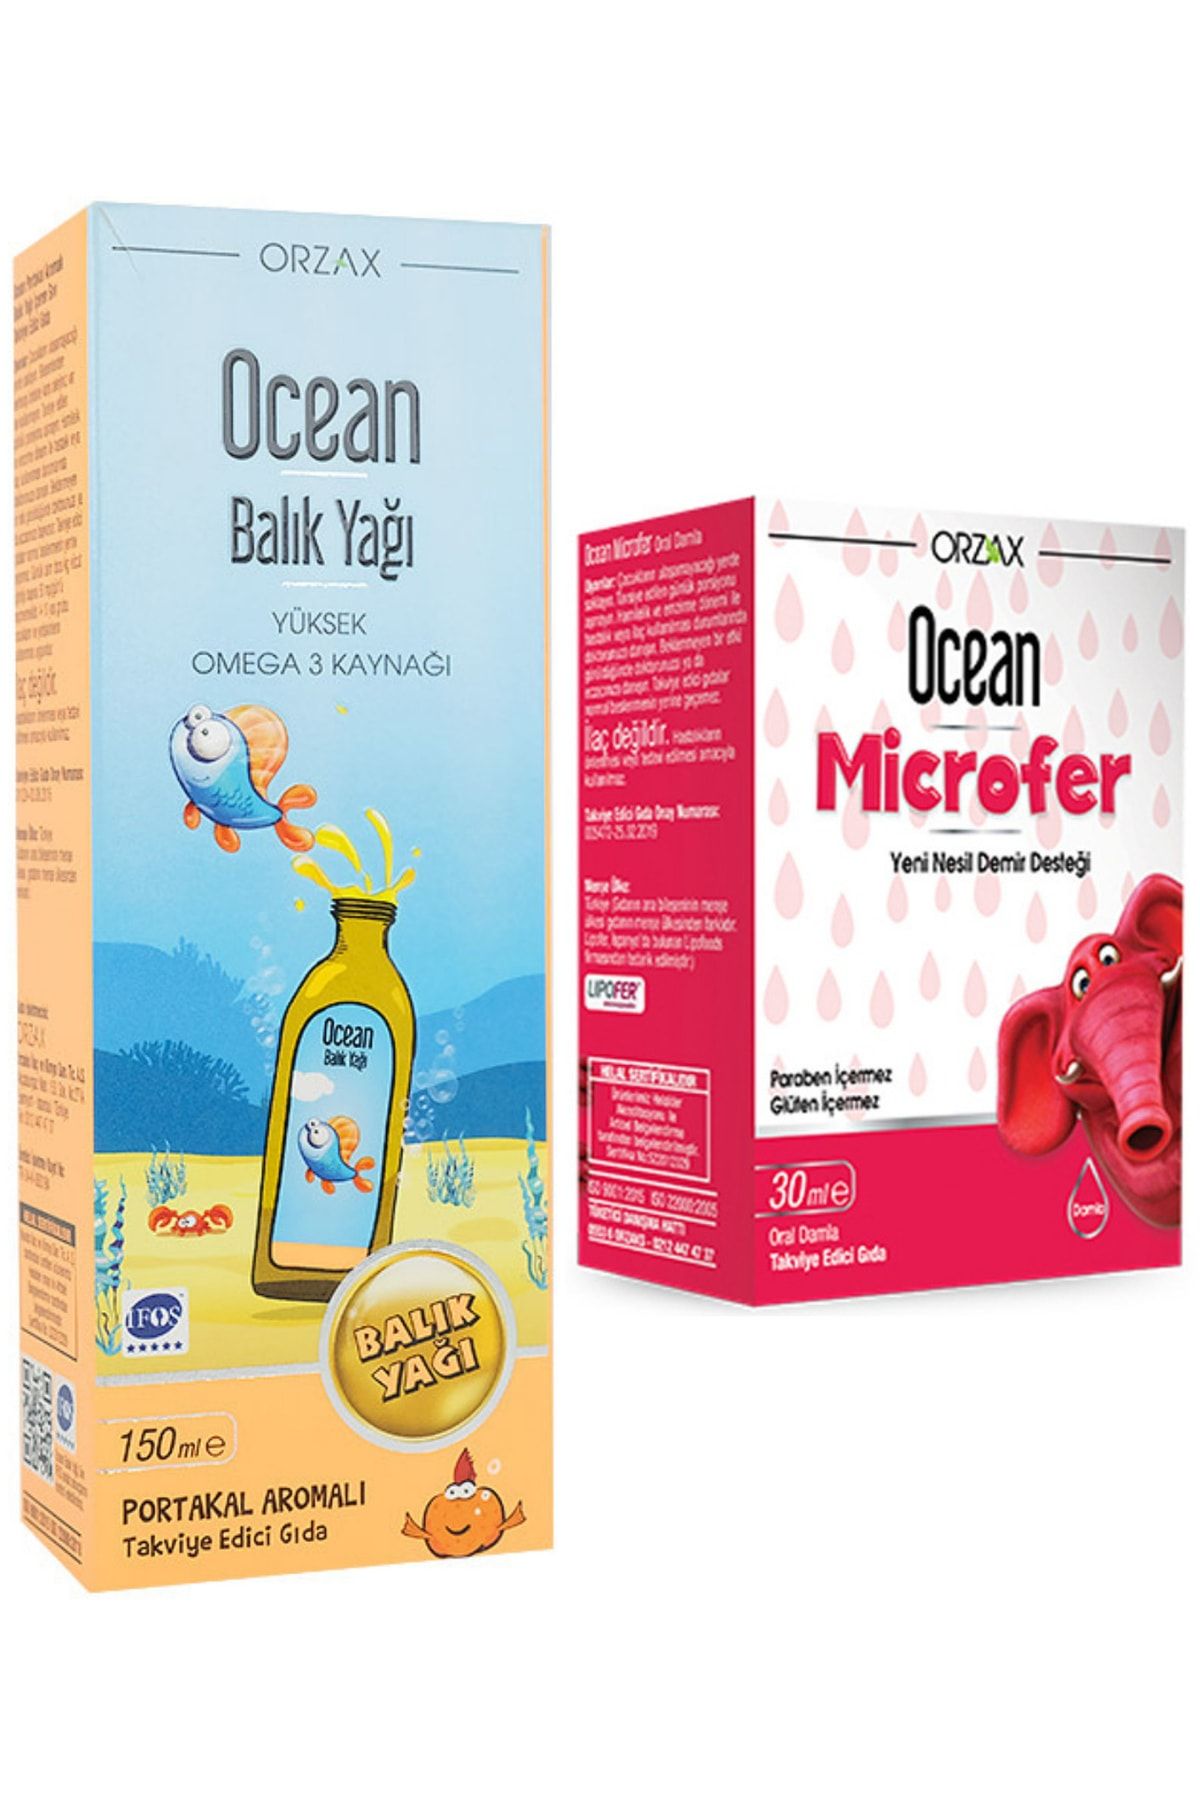 Ocean Microfer Oral Damla 30 Ml + Balık Yağı Portakal Aromalı Şurup 150ml